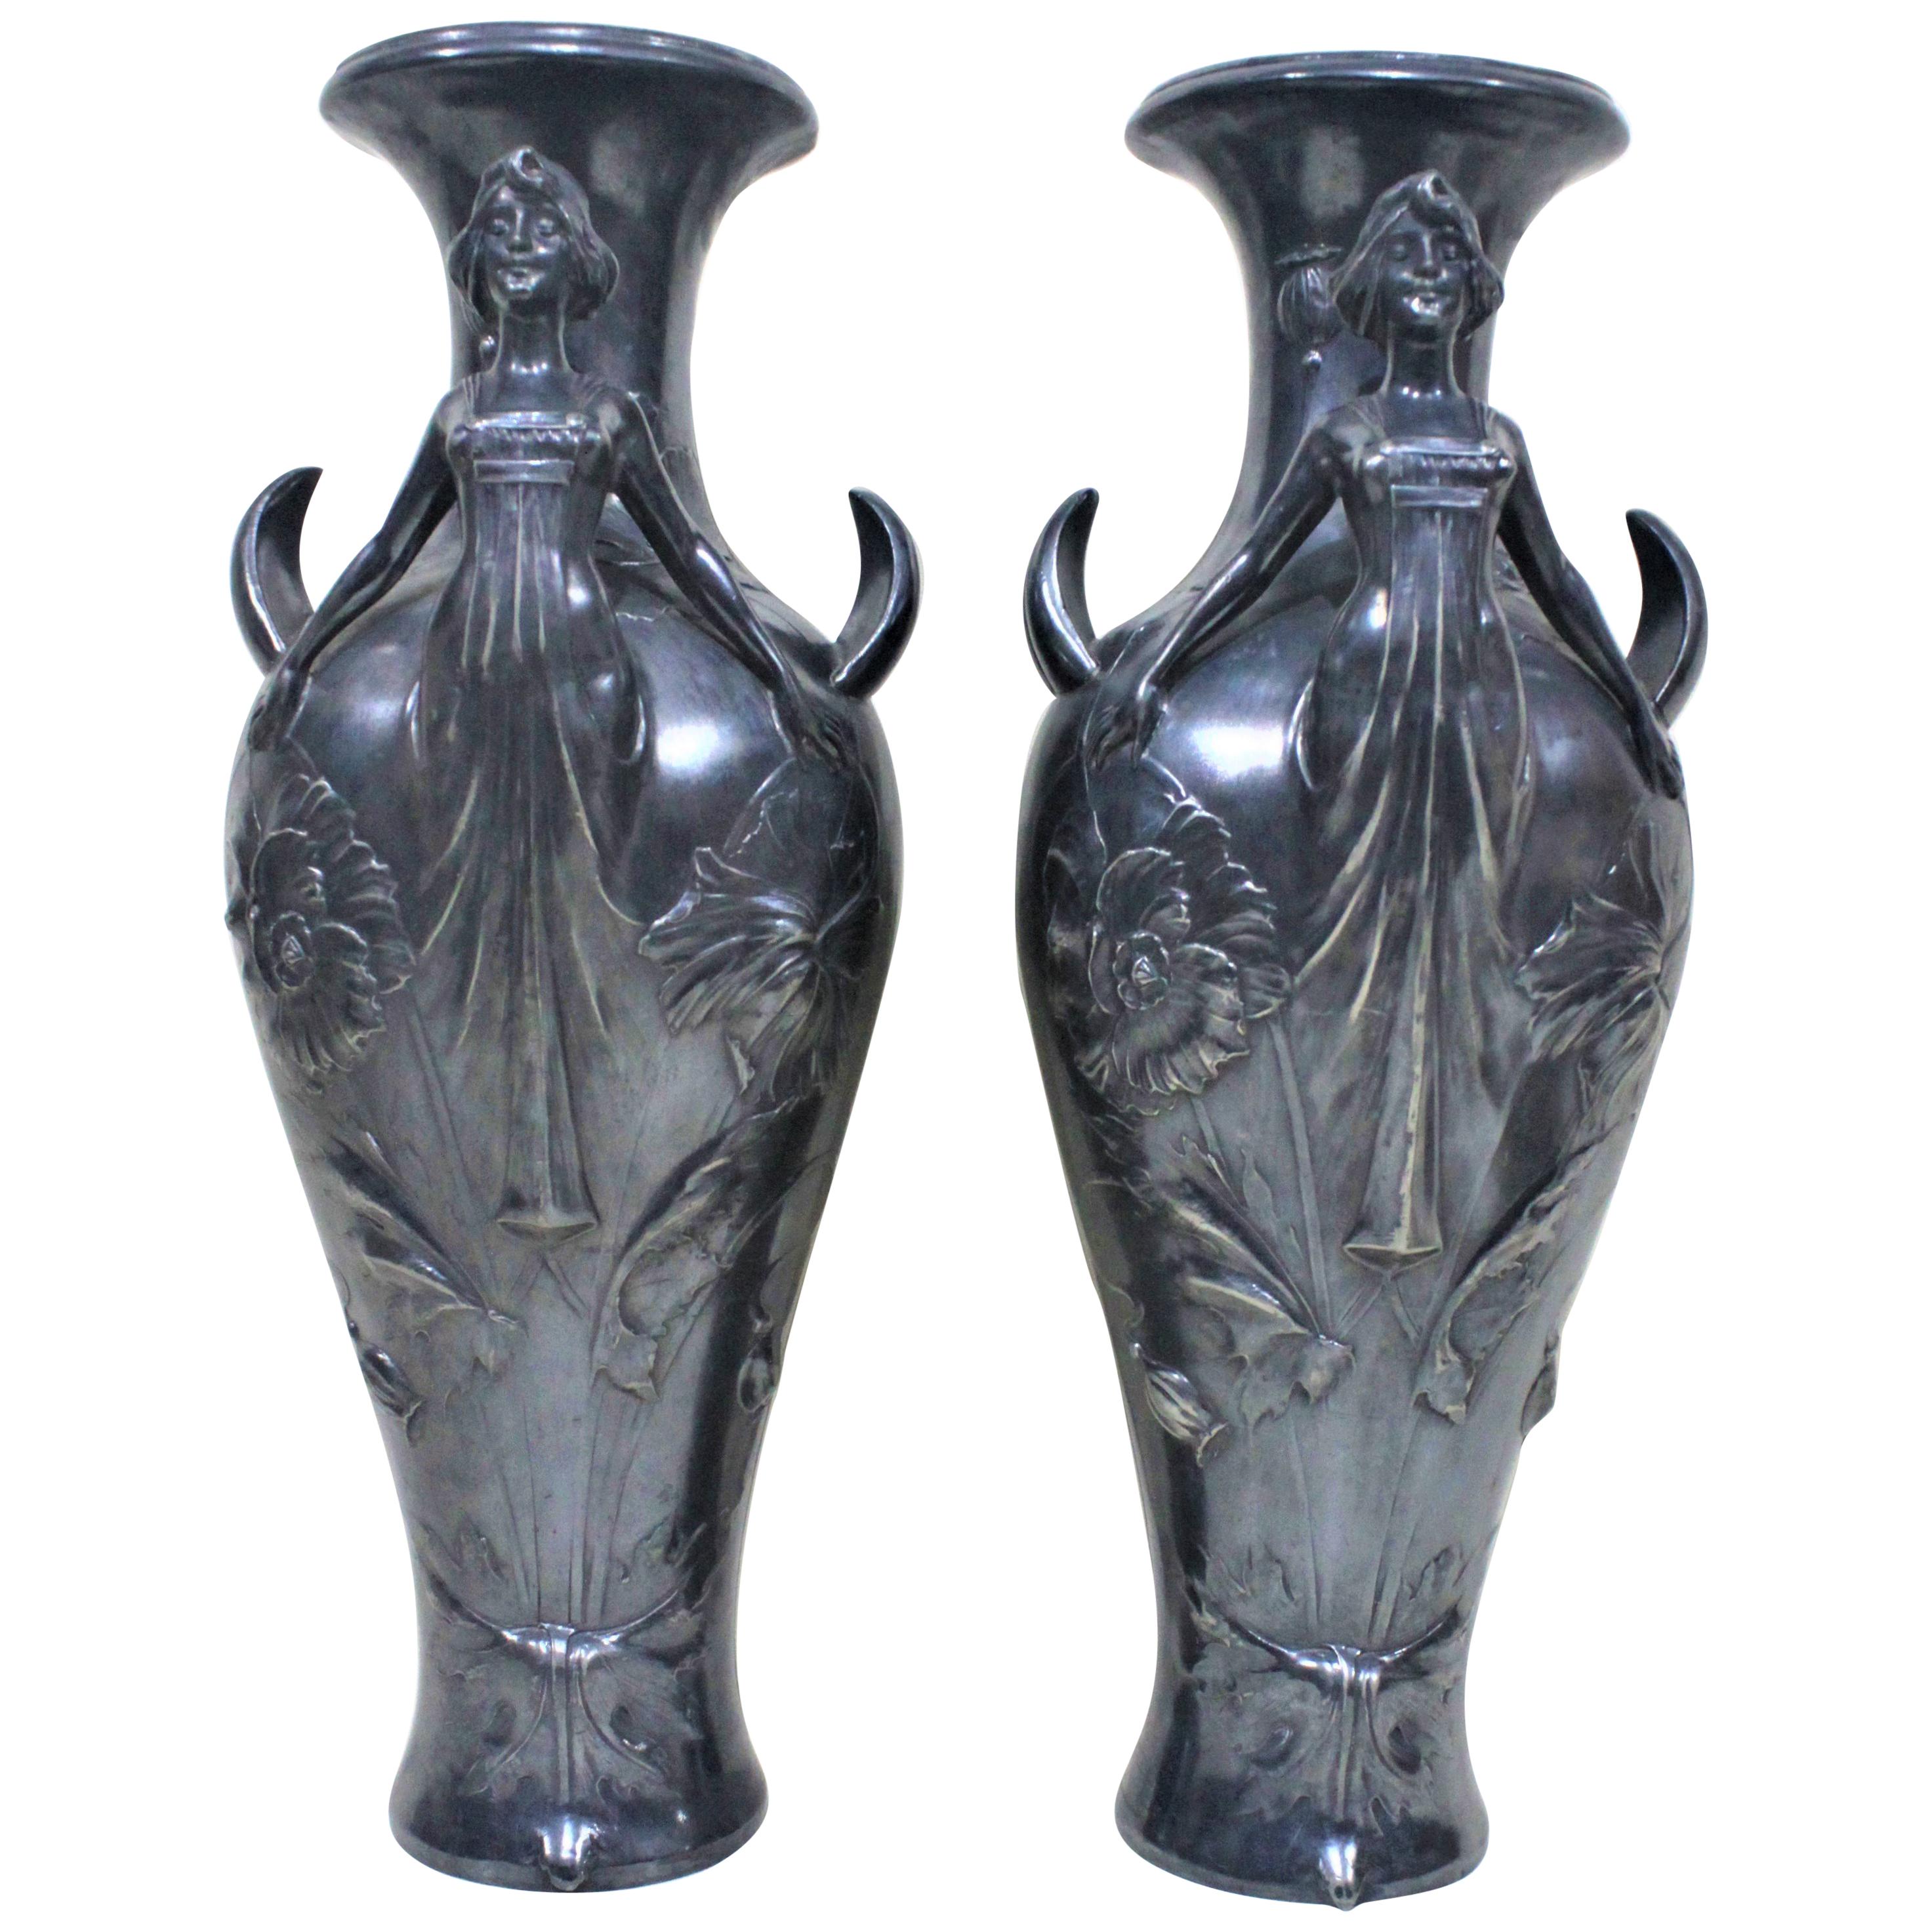 Pareja de jarrones Art Nouveau plateados con figuras femeninas estilizadas